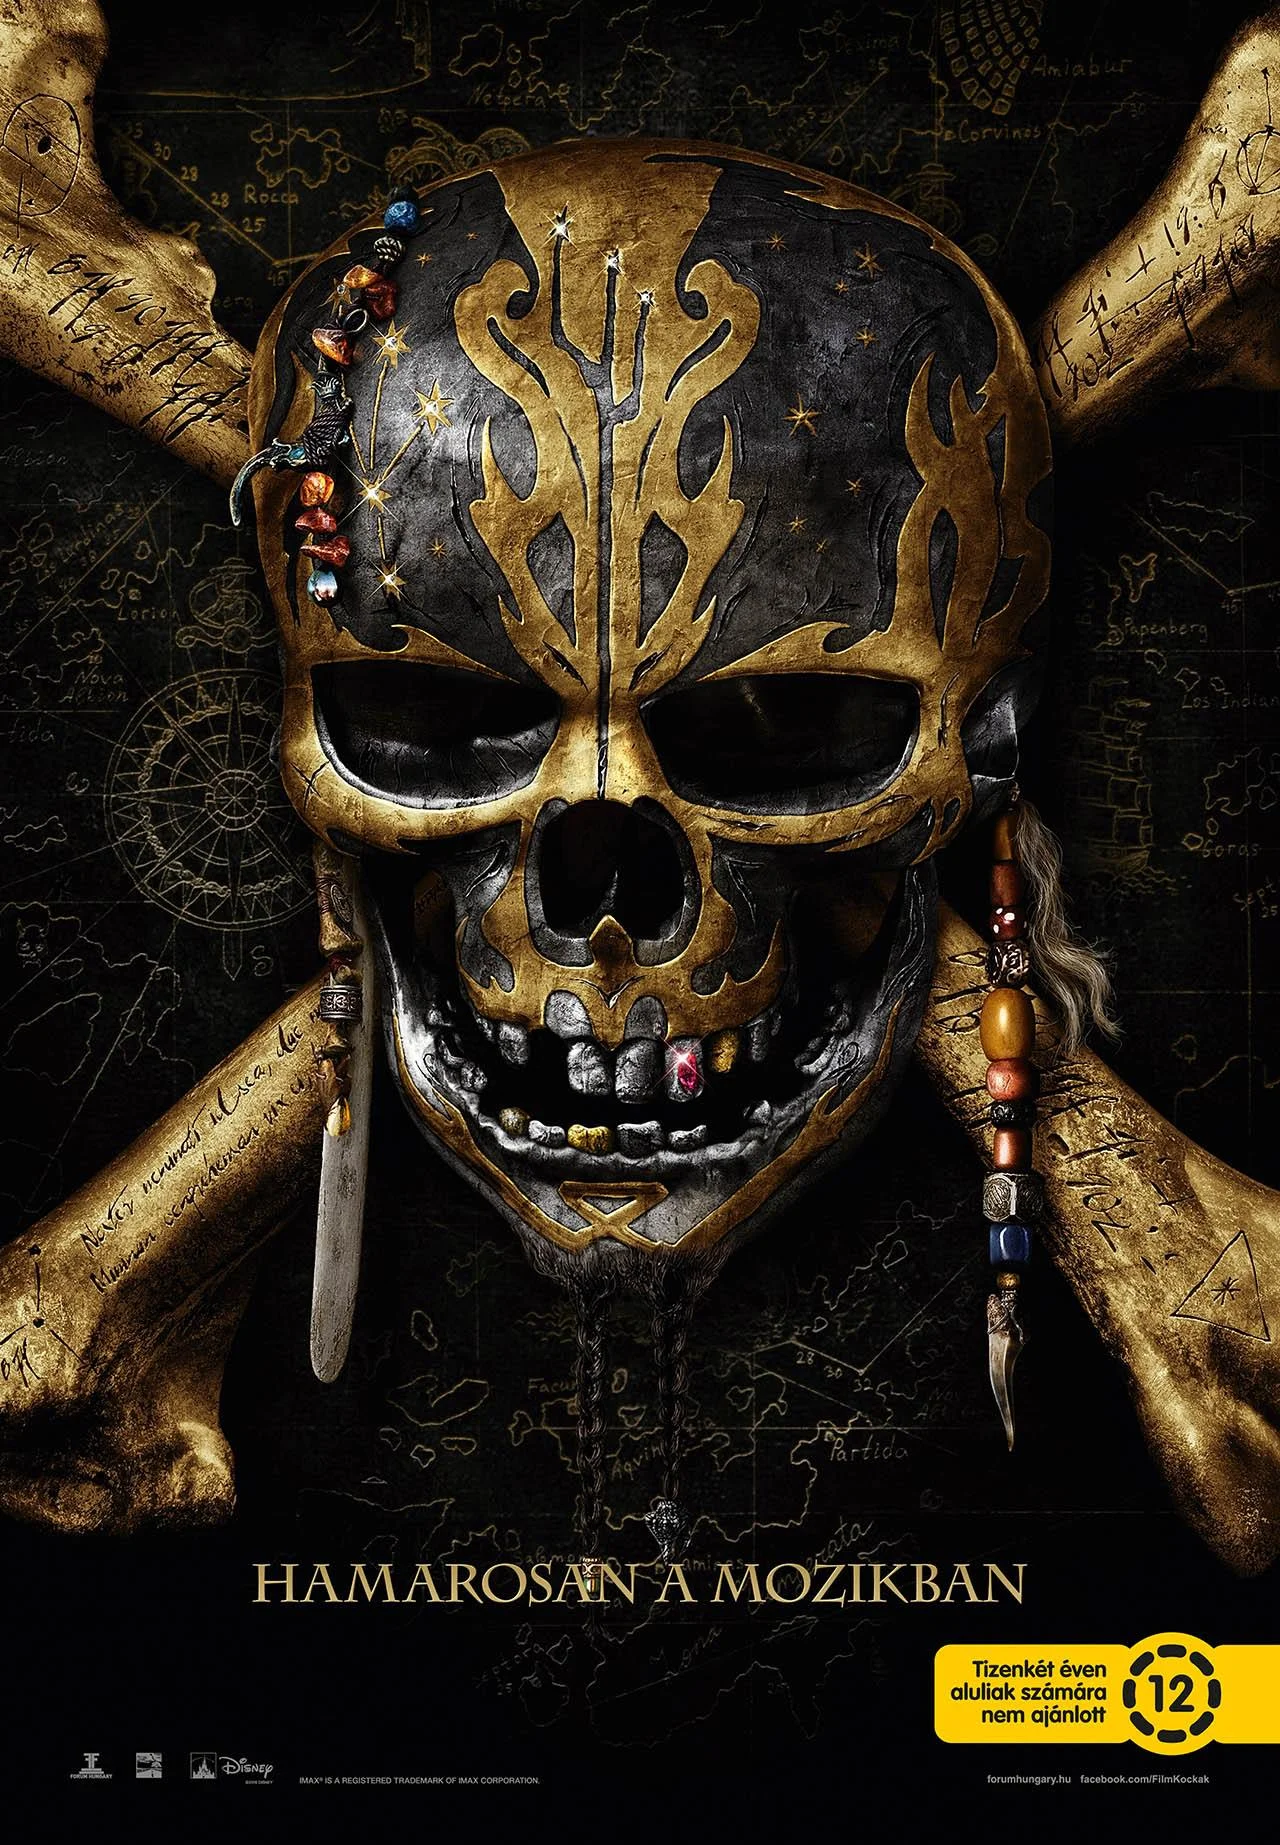 Jack Sparrow visszatért a legújabb A Karib-tenger kalózai posztereken